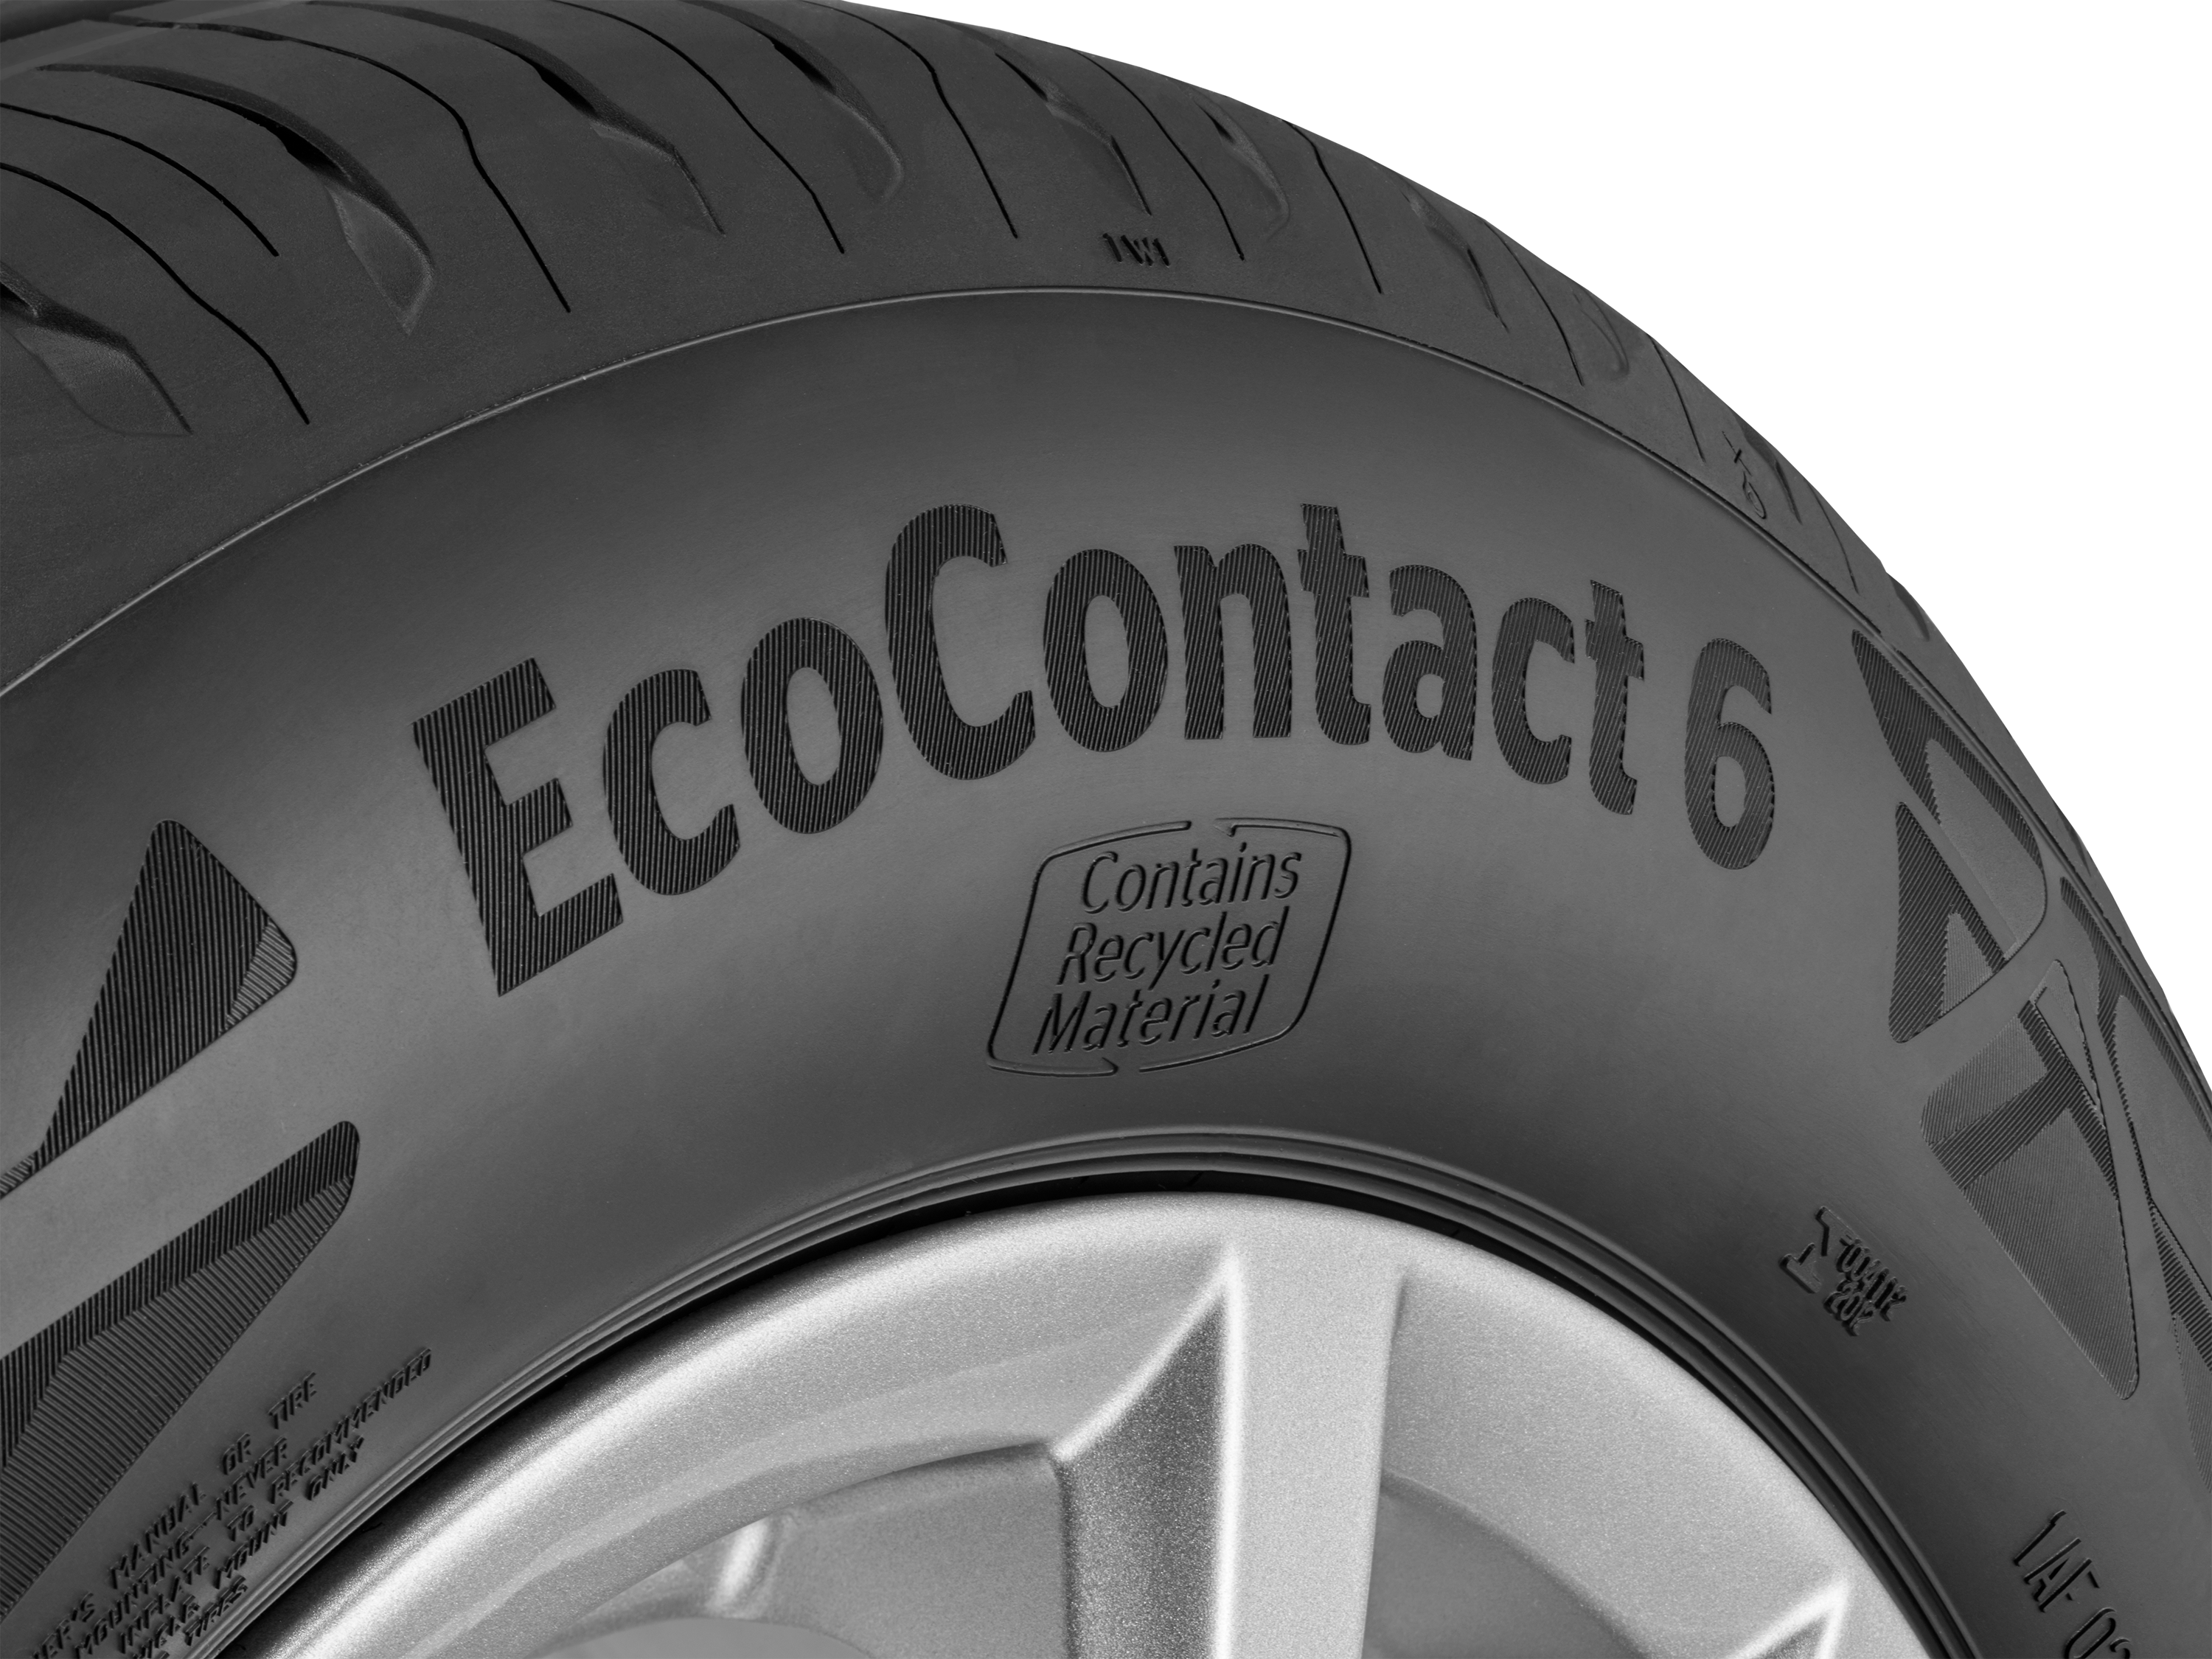 EcoContact6